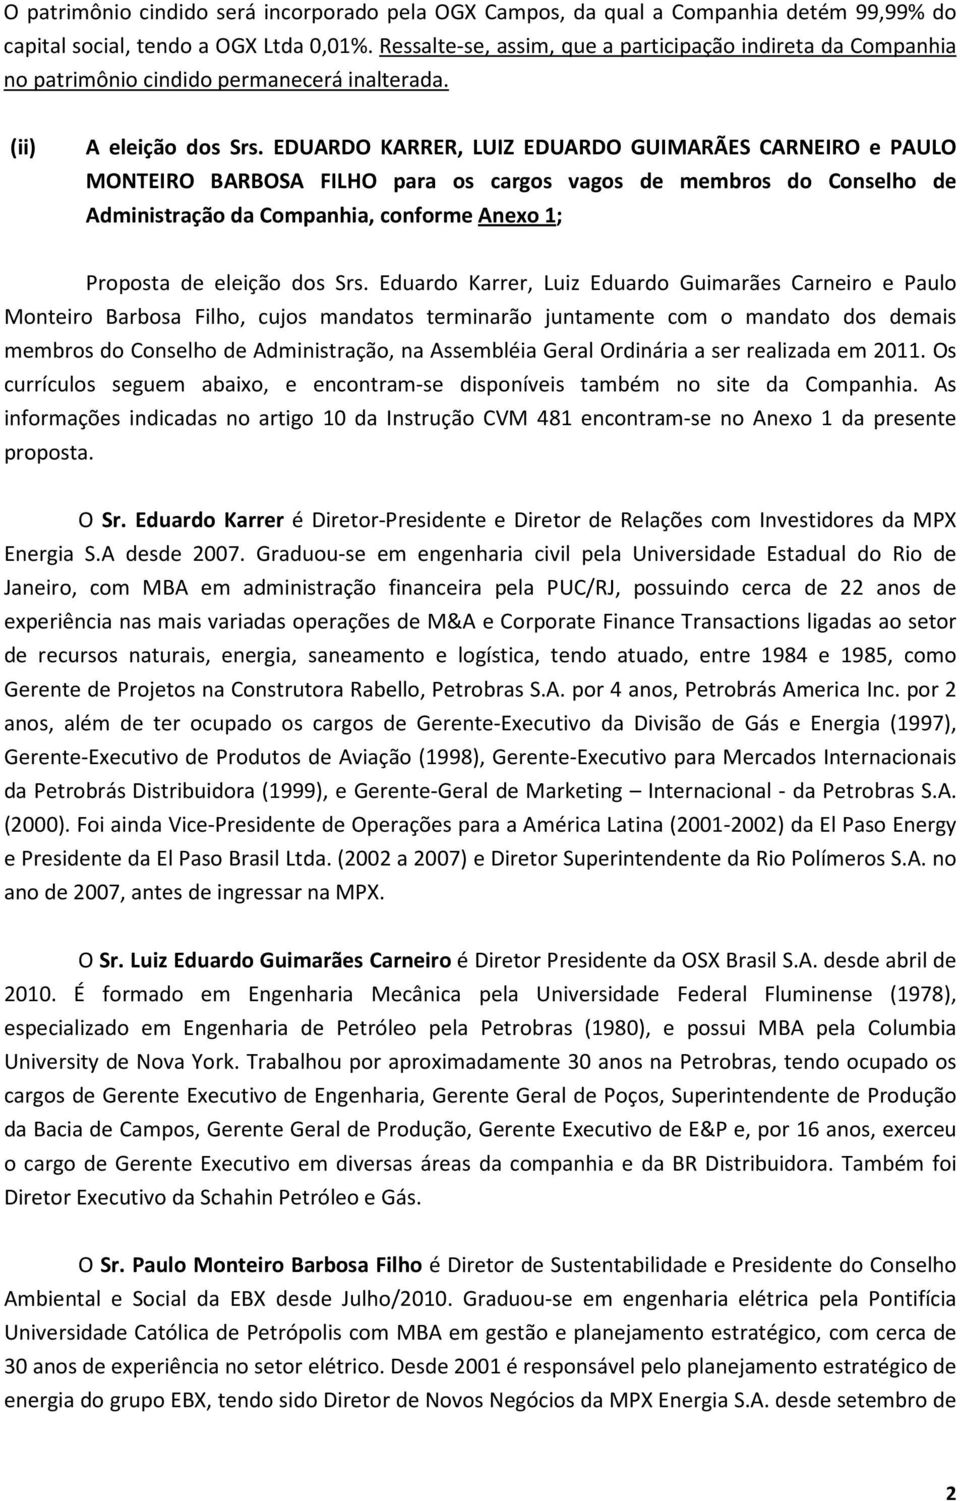 EDUARDO KARRER, LUIZ EDUARDO GUIMARÃES CARNEIRO e PAULO MONTEIRO BARBOSA FILHO para os cargos vagos de membros do Conselho de Administração da Companhia, conforme Anexo 1; Proposta de eleição dos Srs.